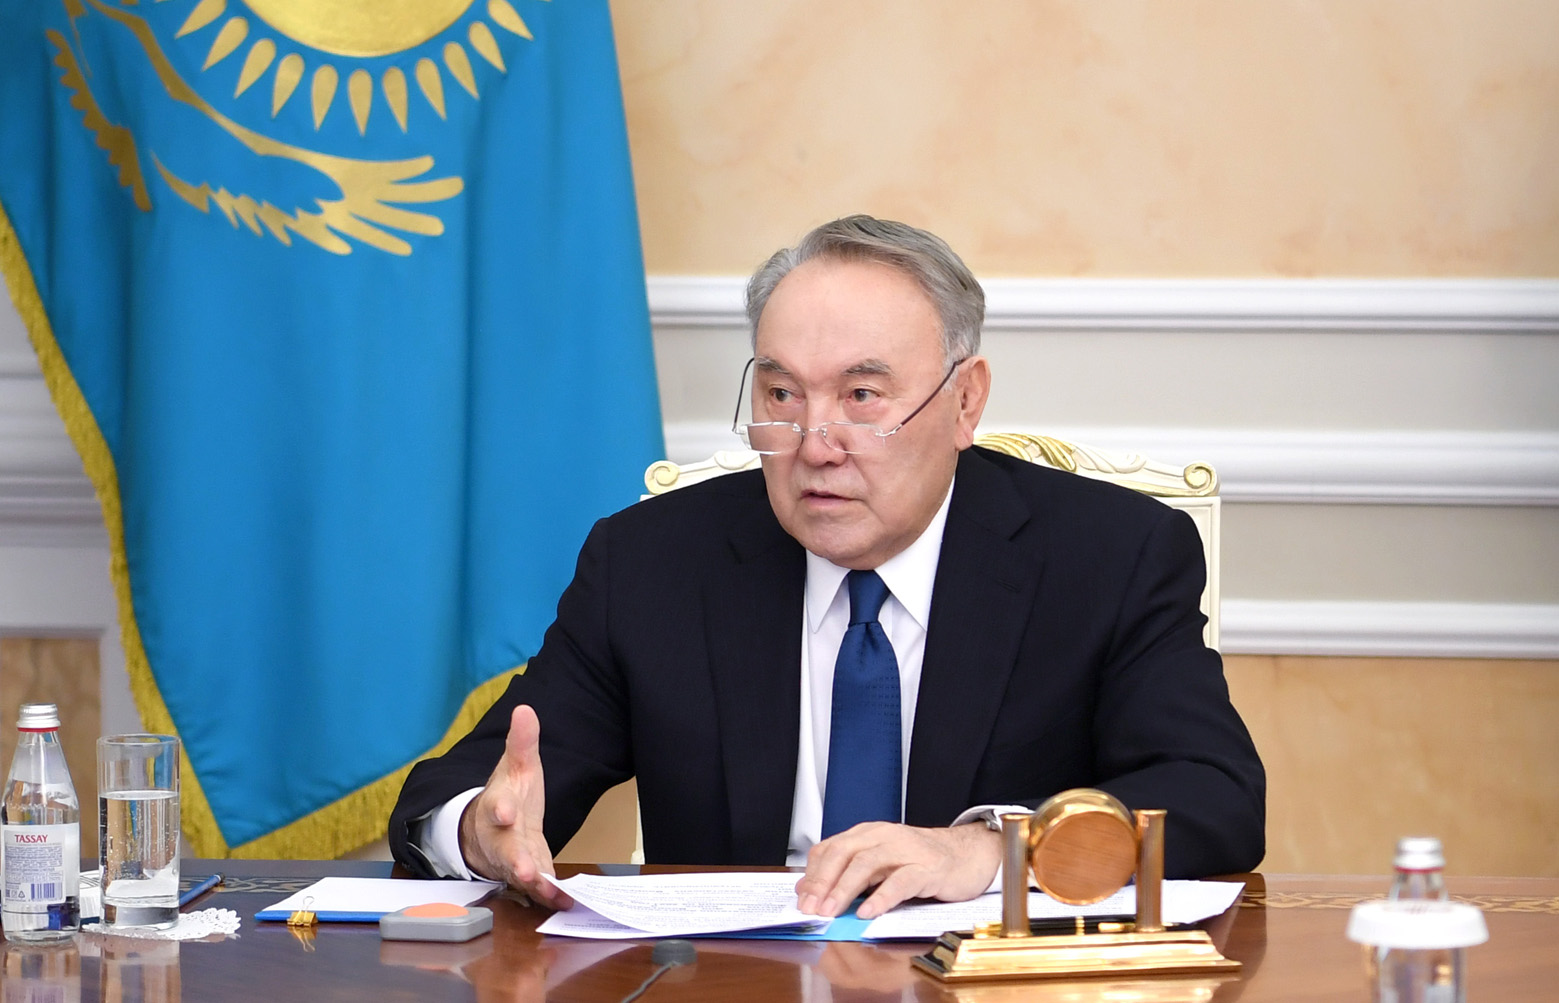 Nazarbayev uzun fasilədən sonra siyasətə qayıtdı